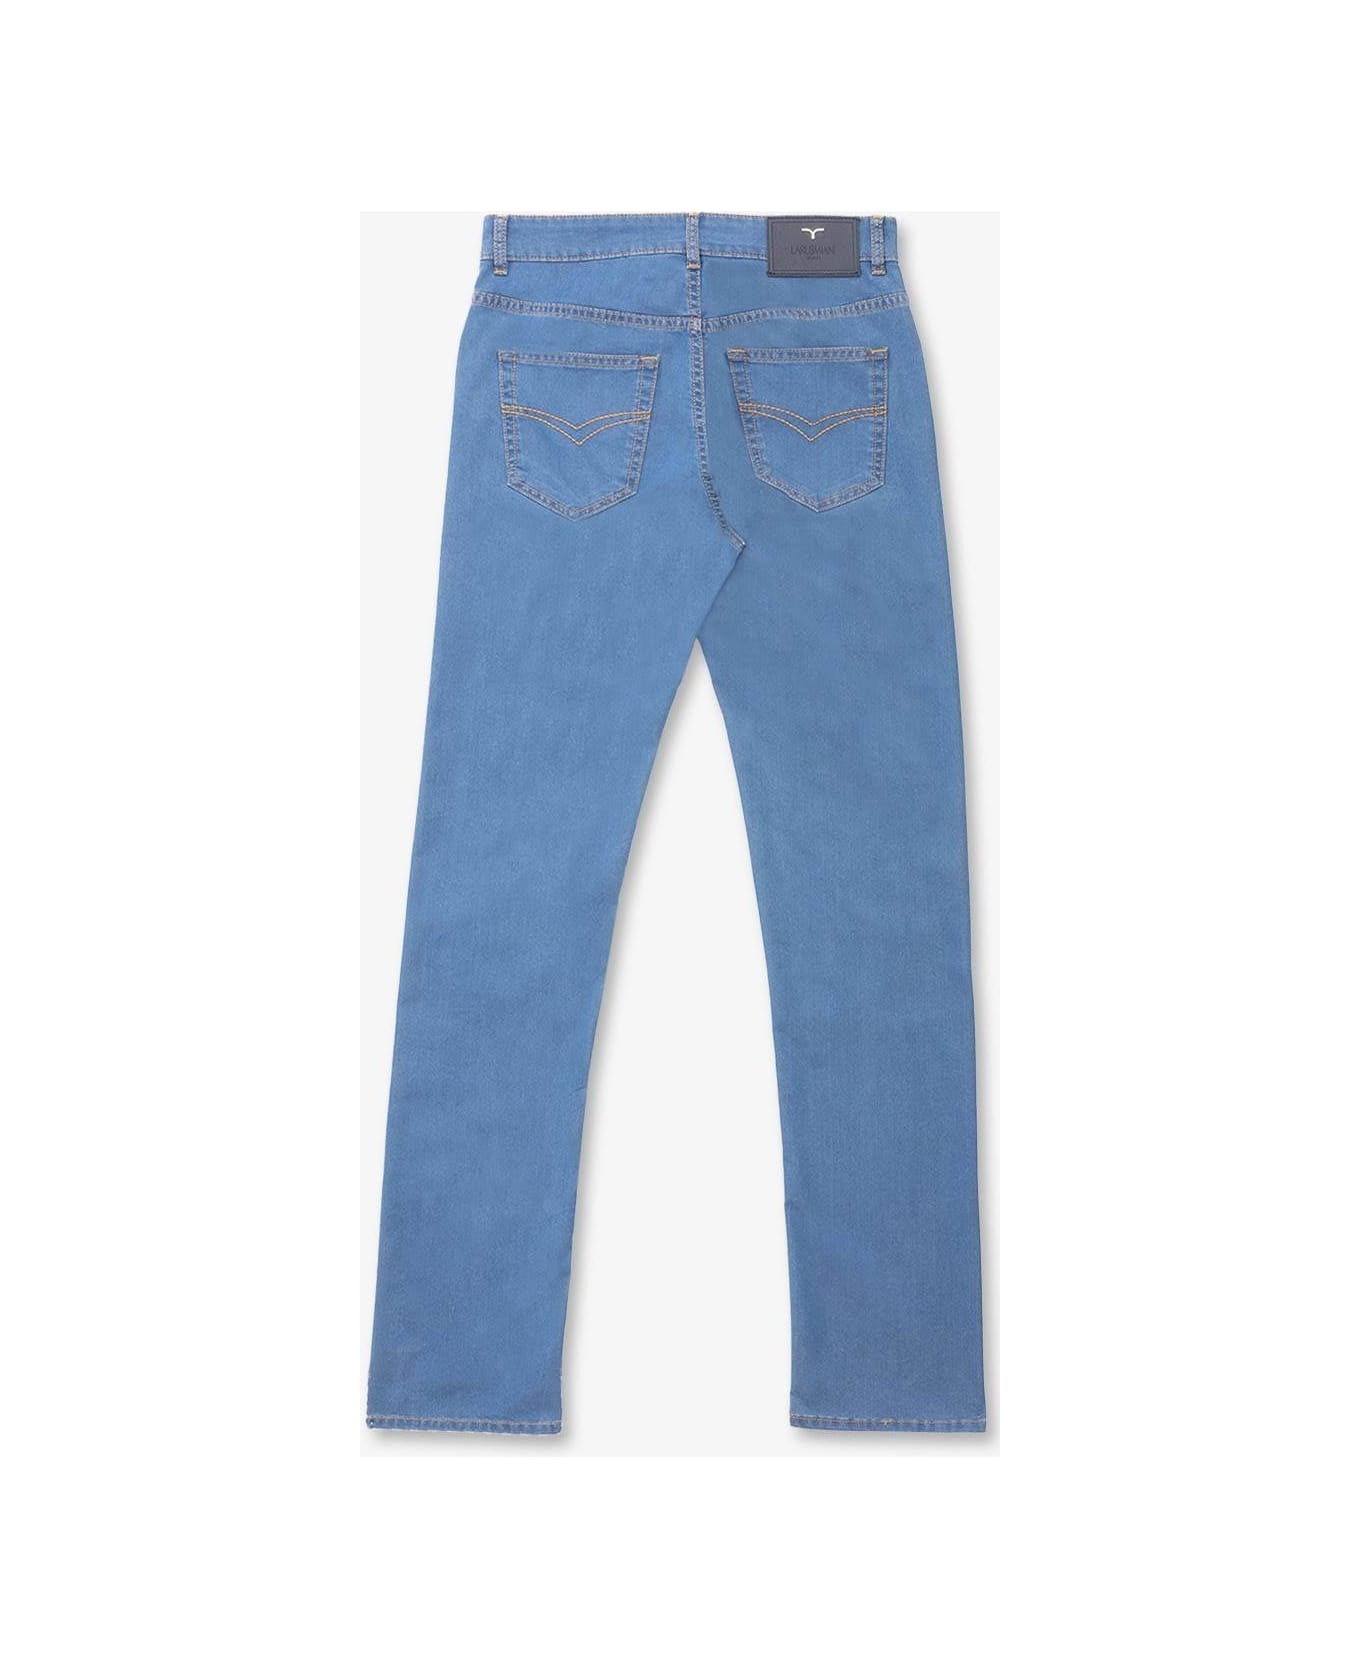 Larusmiani Fuji Trousers Jeans Jeans - LightBlue